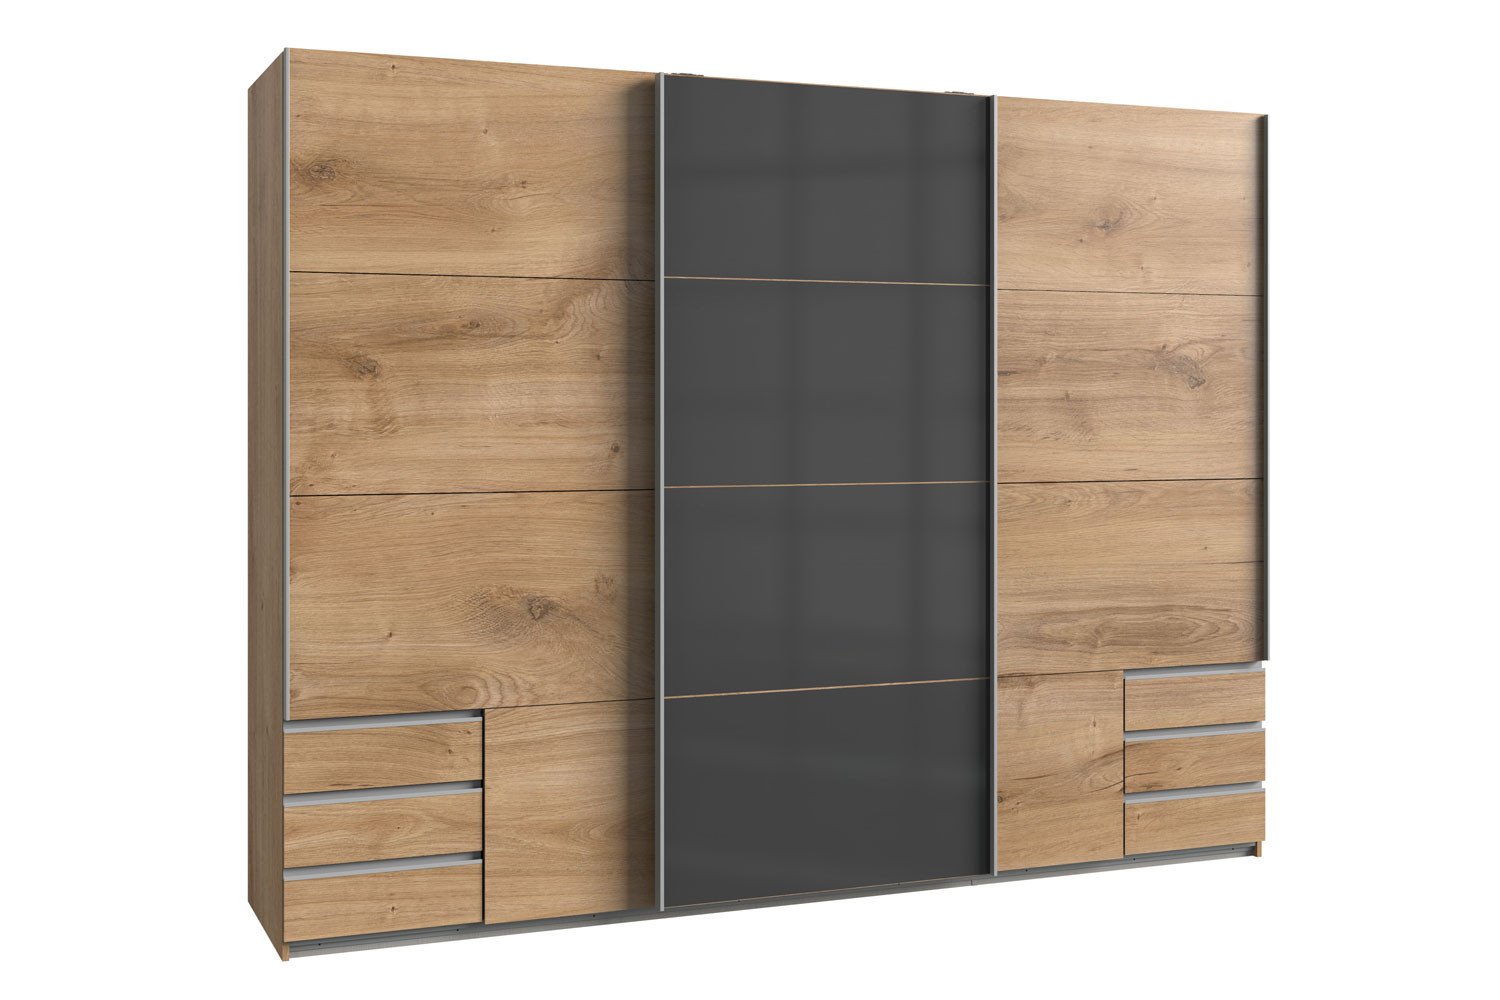 Schlafzimmer | Nachbildung Wimex Valencia Letz Online-Shop - Ihr Möbel Plankeneiche